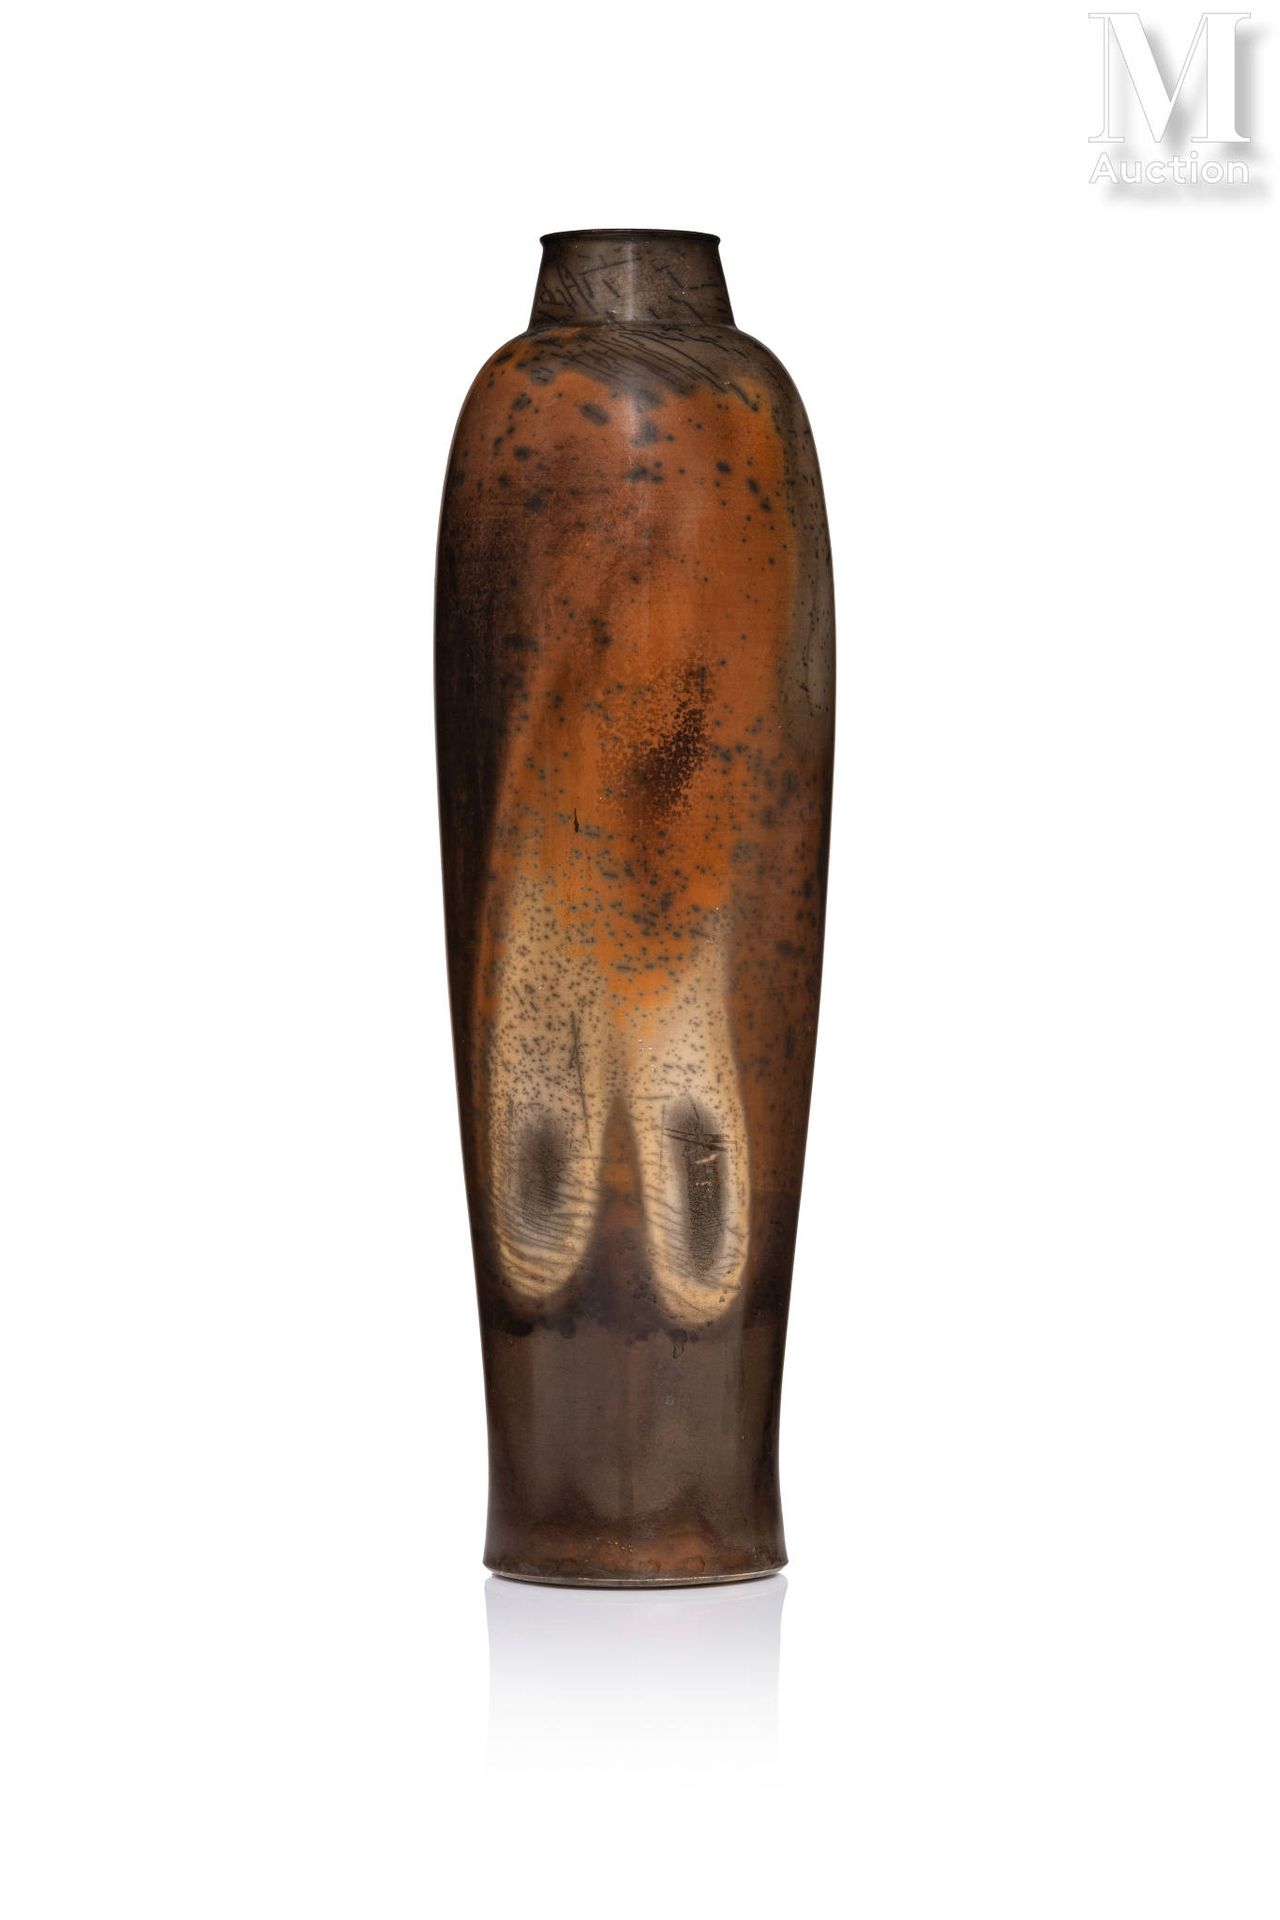 Pierre BAYLE (1945 - 2004) Eiförmige Vase mit eingezogenem Hals aus gesigilltem,&hellip;